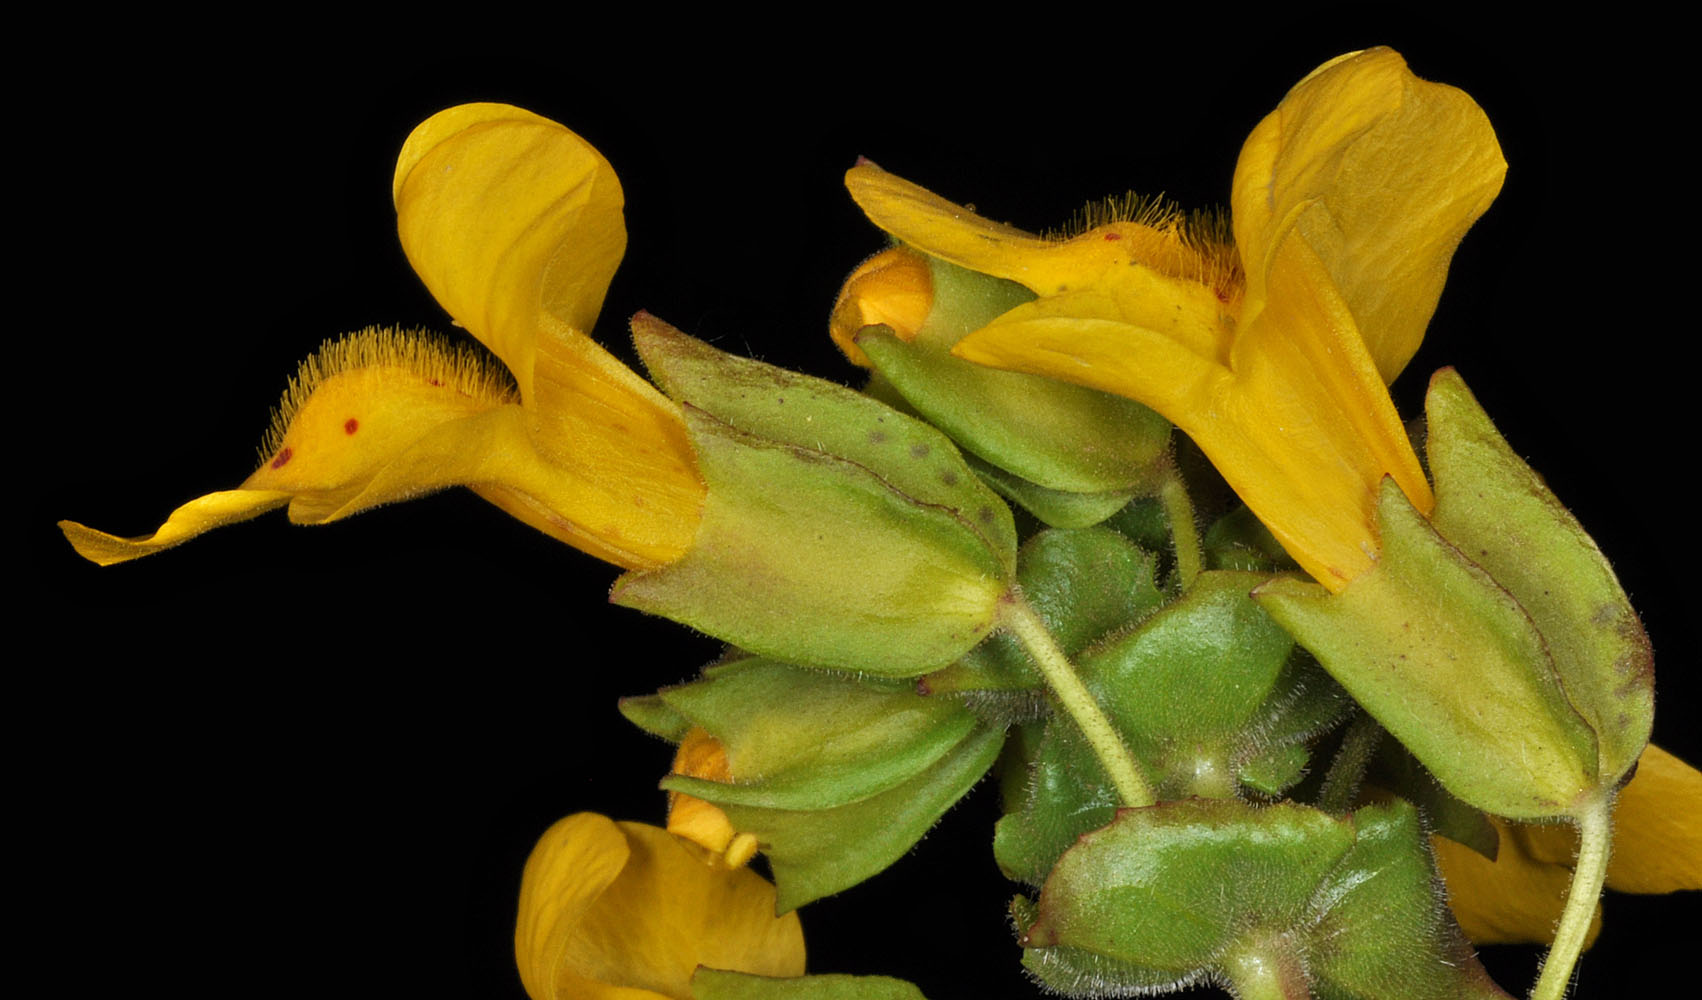 Flora of Eastern Washington Image: Erythranthe guttata